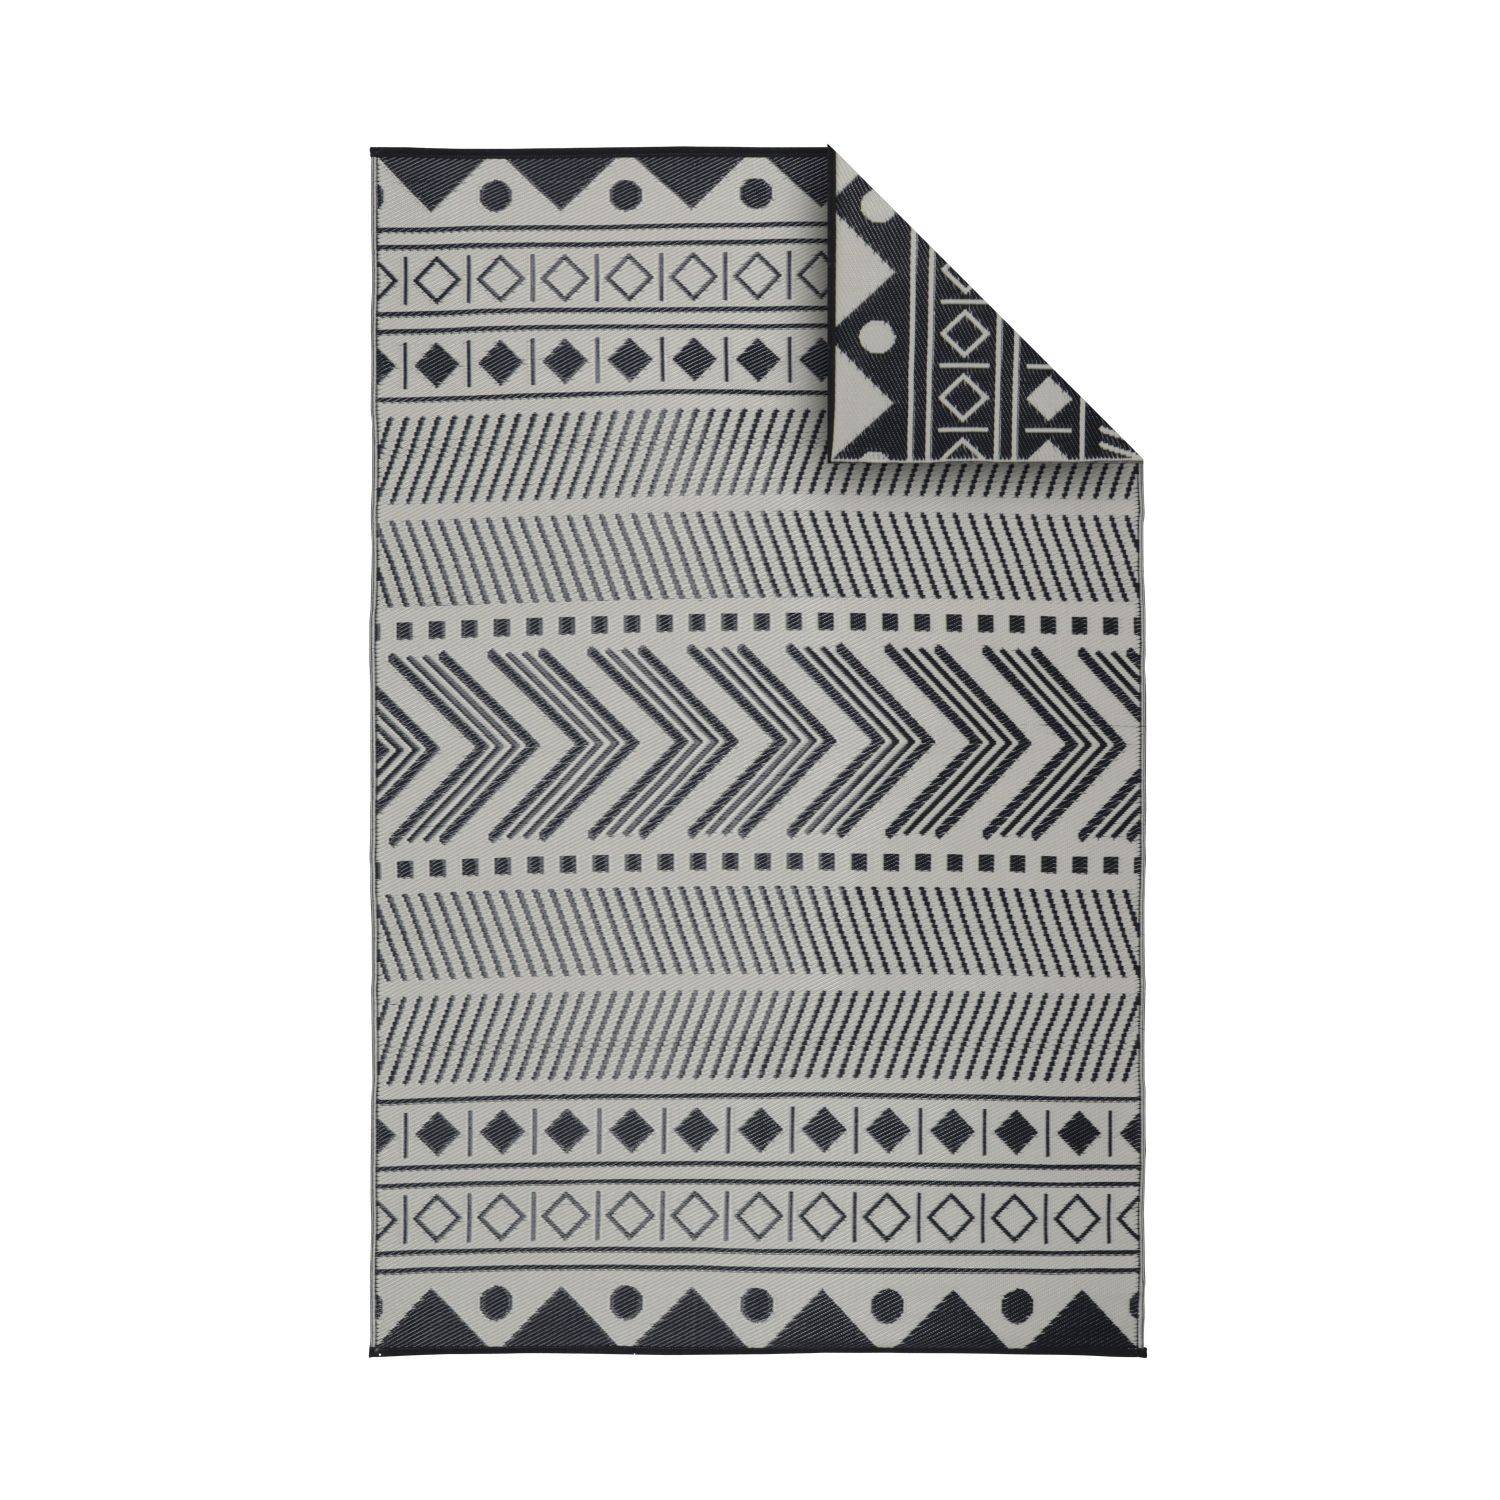 Outdoor rug - 180x270cm - Jacquard, reversible, rectangular, indoor/outdoor use - Bamako - Black-beige Photo1